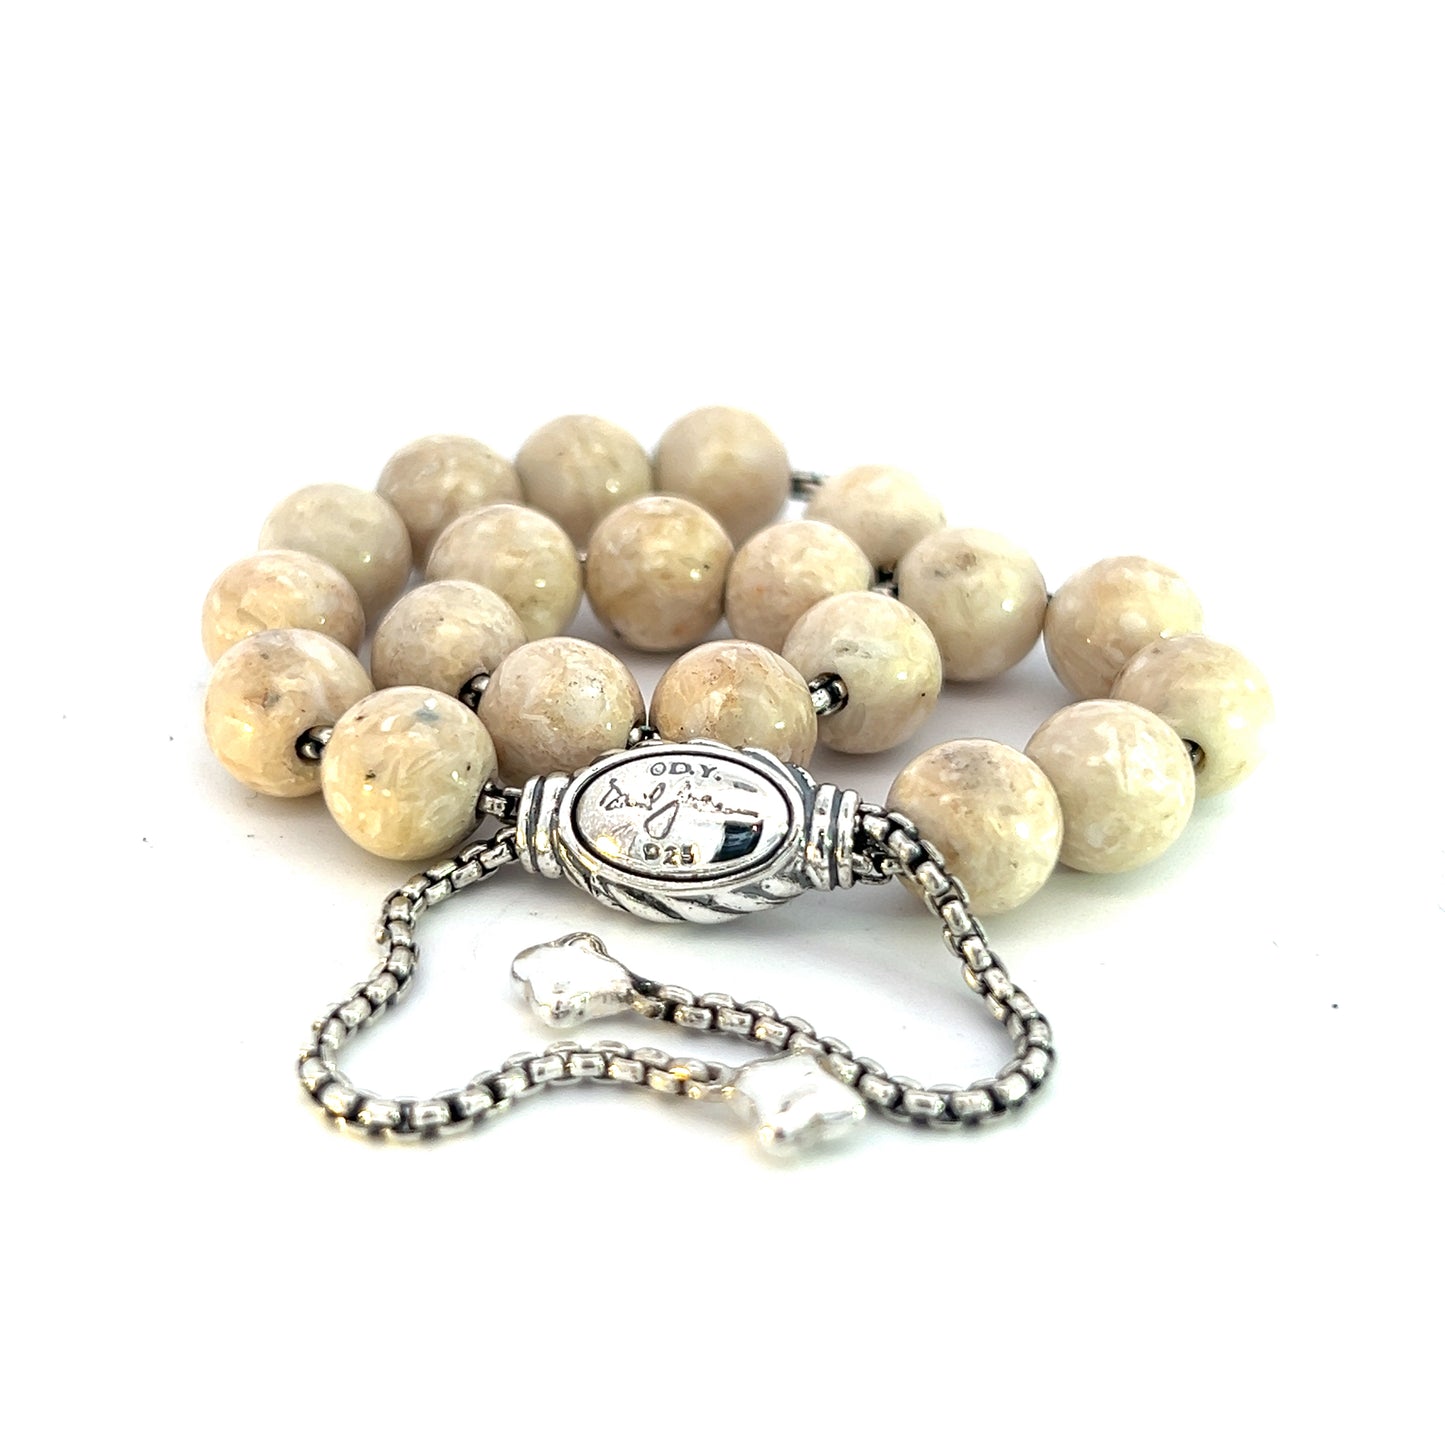 David Yurman Authentic Estate River Stone Spiritual Beads Bracelet 6.6 - 8.5" Silver 8 mm DY451